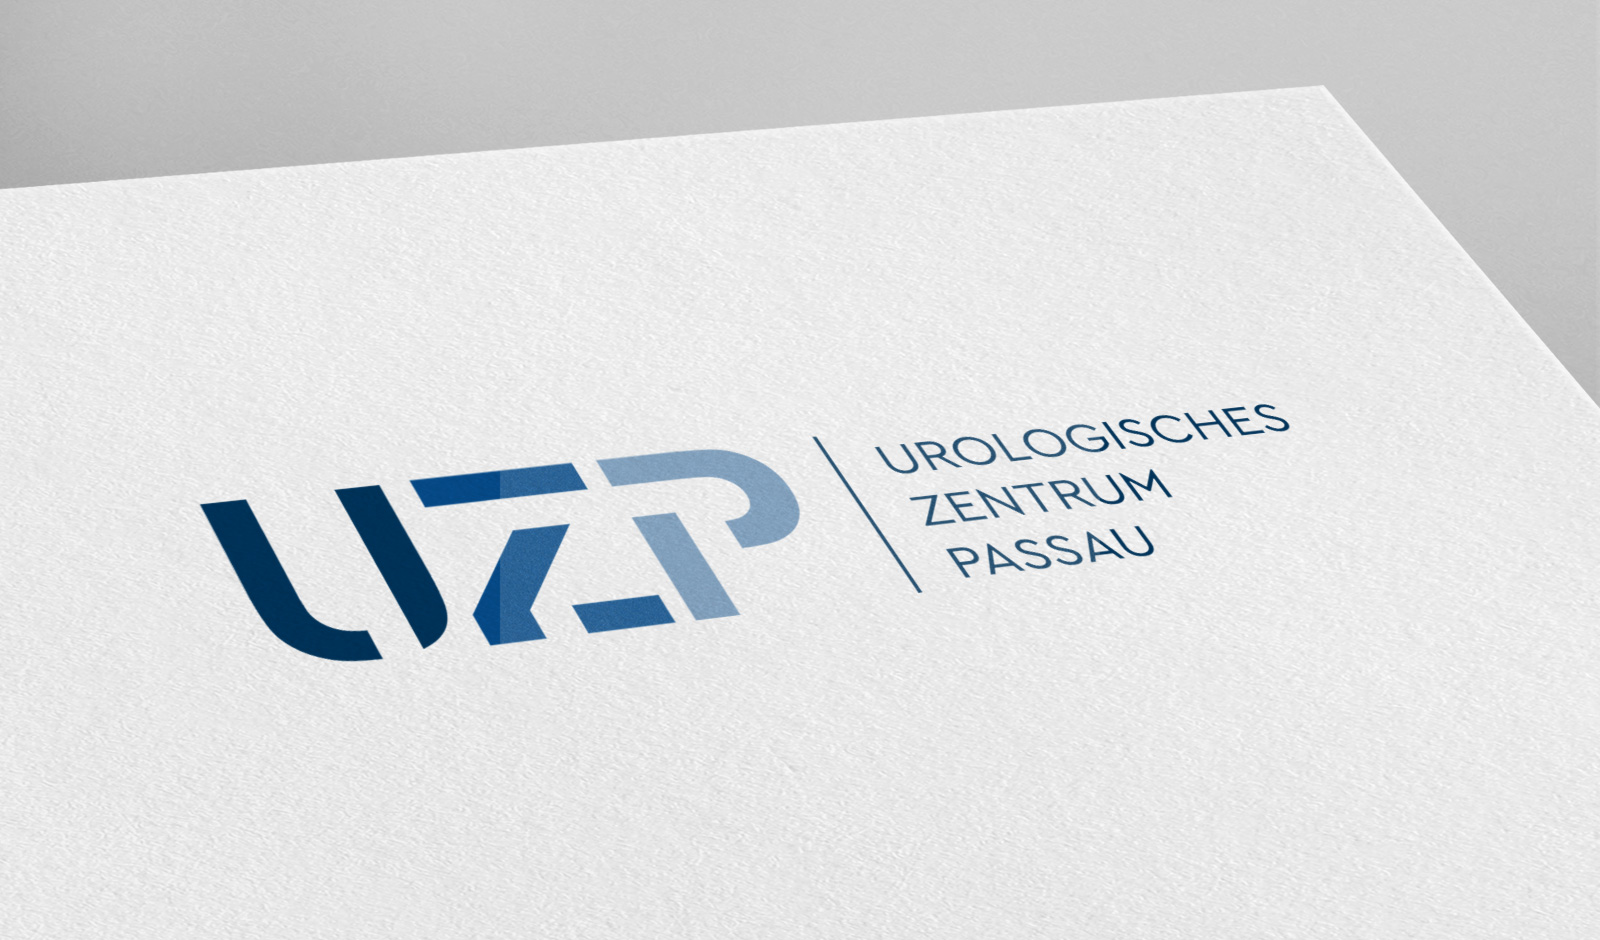 Logodesign für ein urologisches Zentrum in Passau